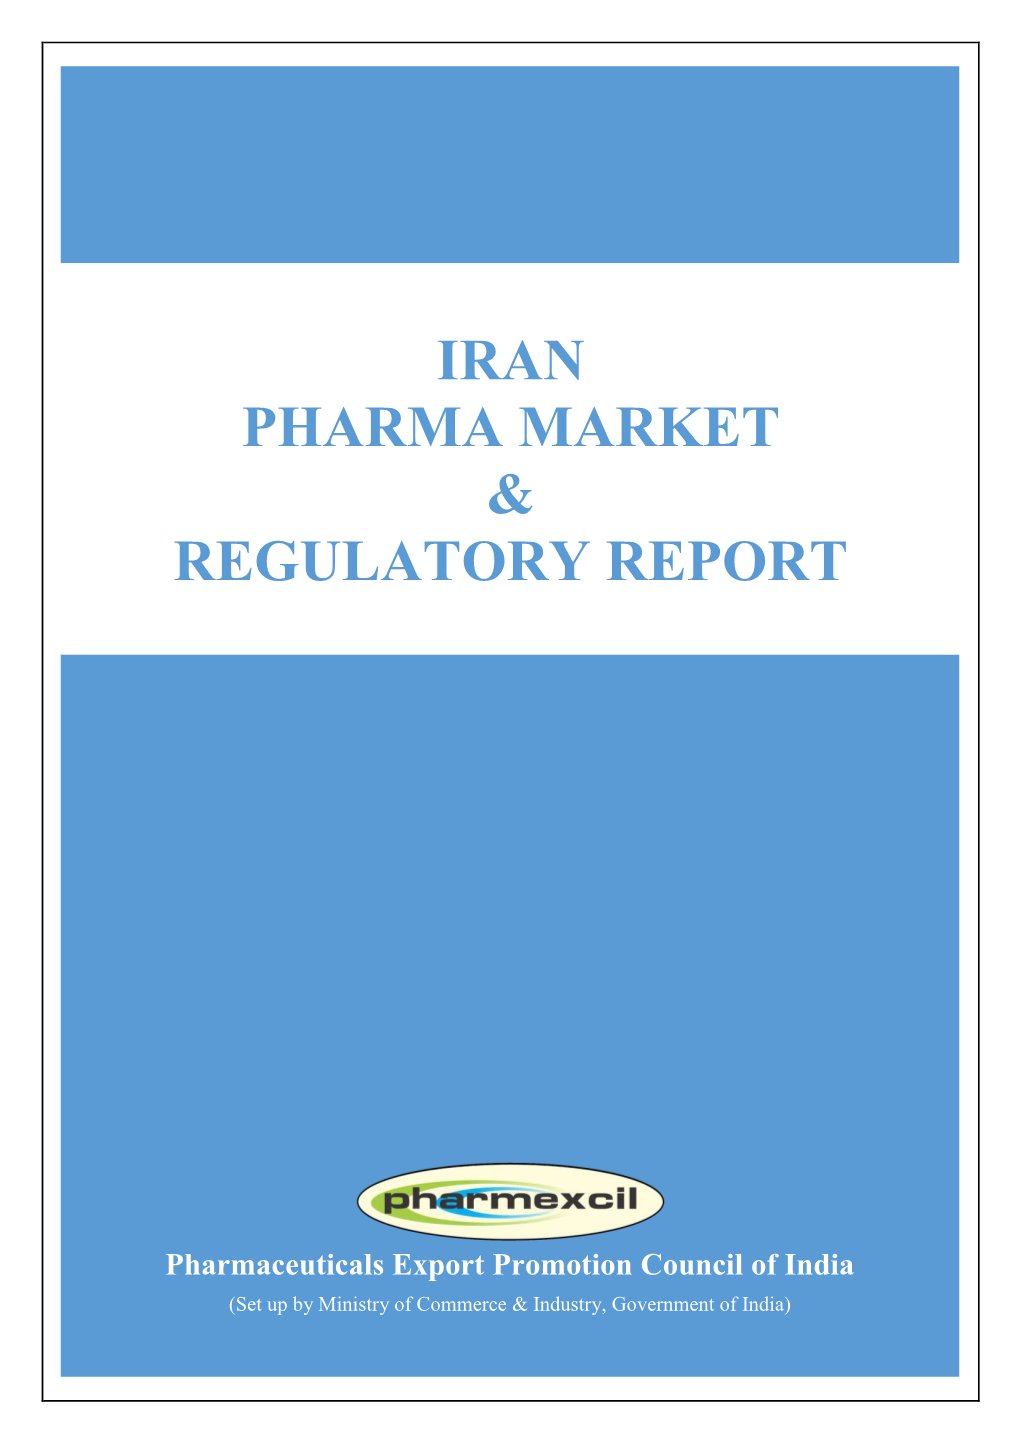 Iran Pharma Market & Regulatory Report